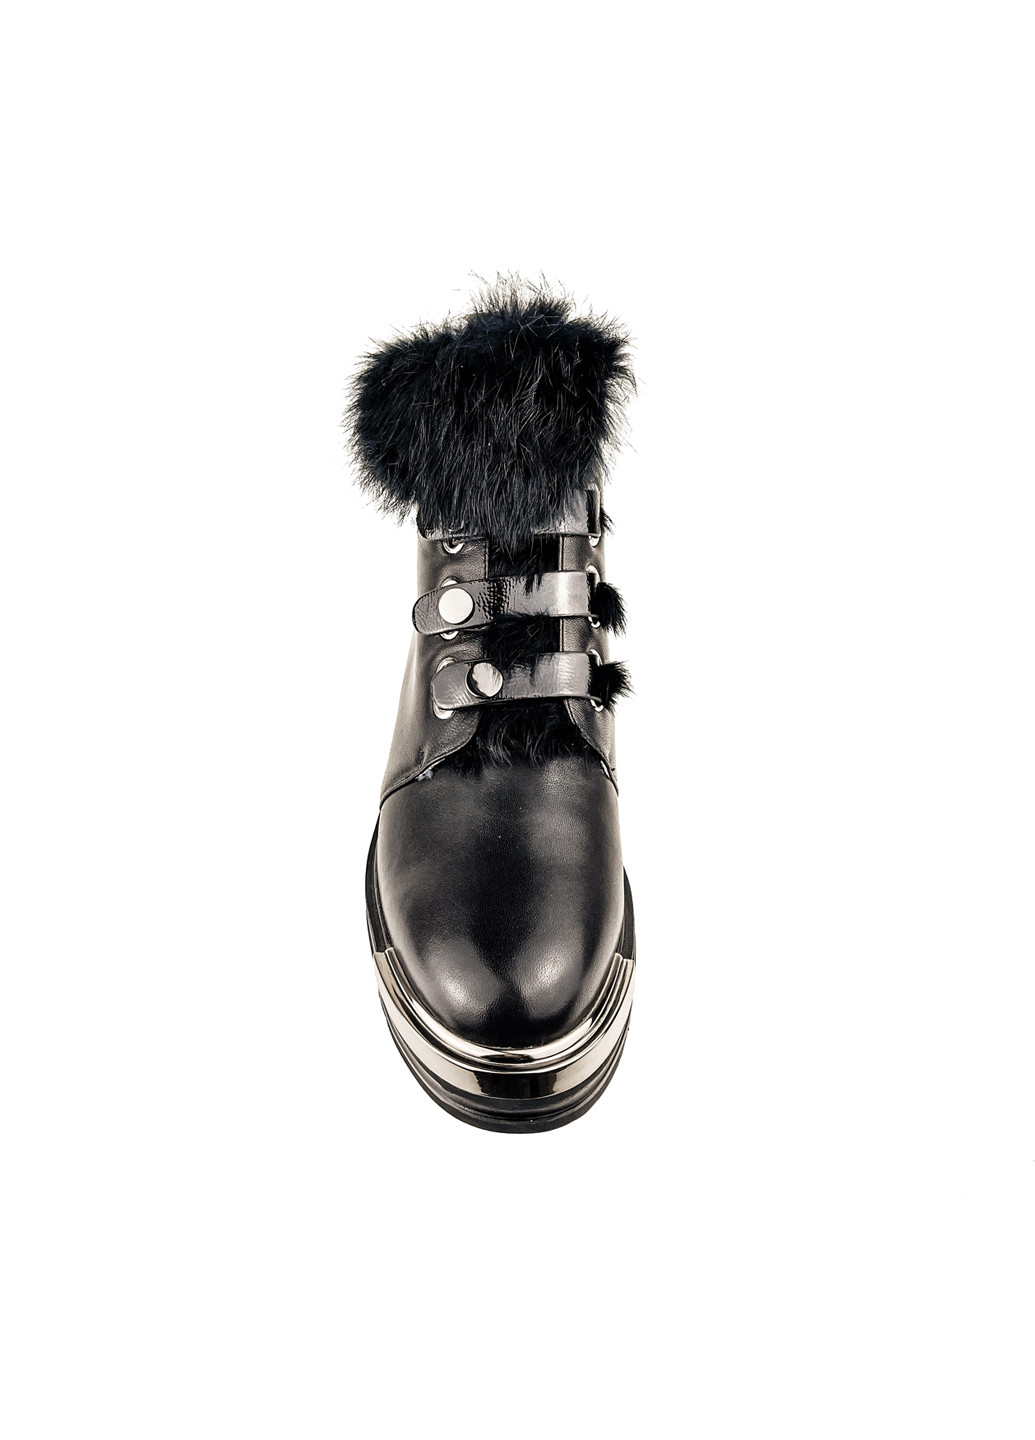 Зимние ботинки женские утепленные мехом зимние черные на платформе Brocoli